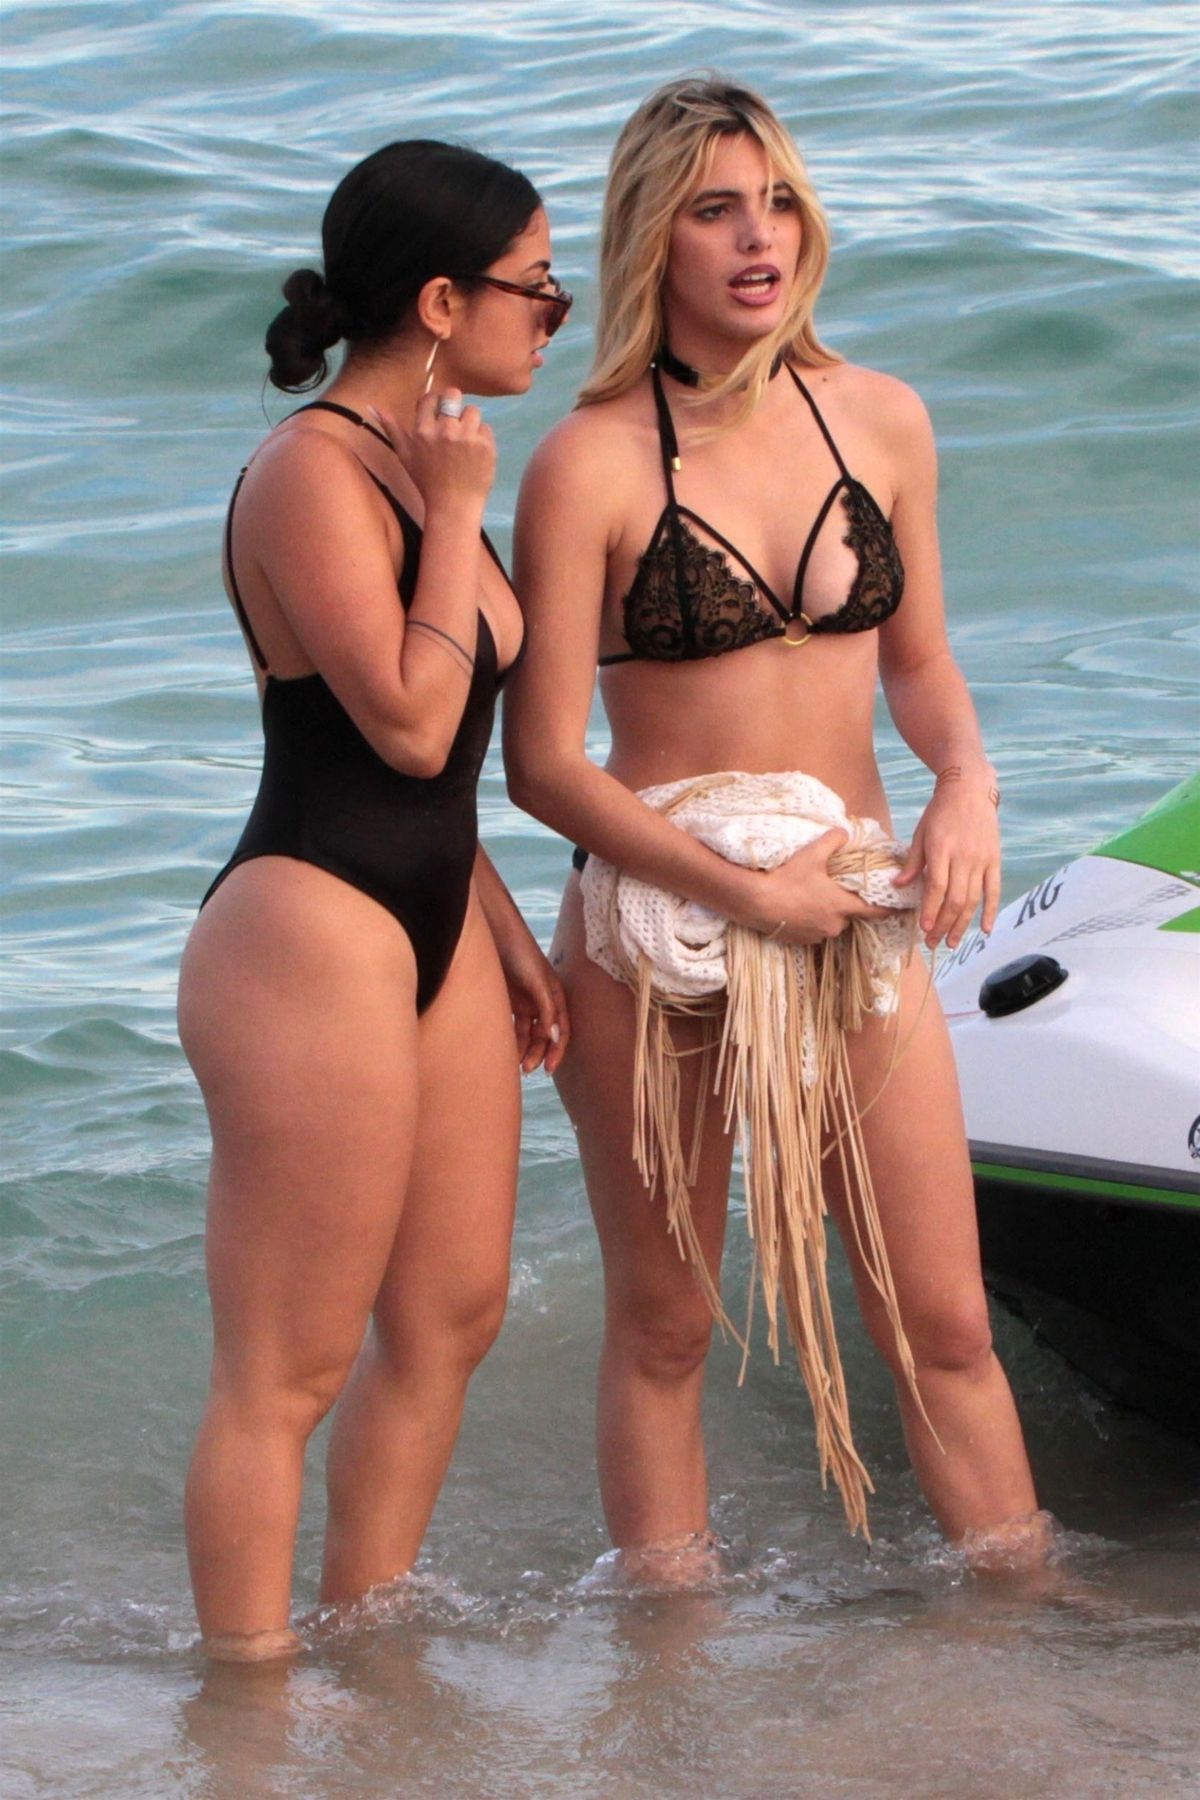 LELE PONS and INANNA in Bikini on the Beach in Miami 01/01/2018.